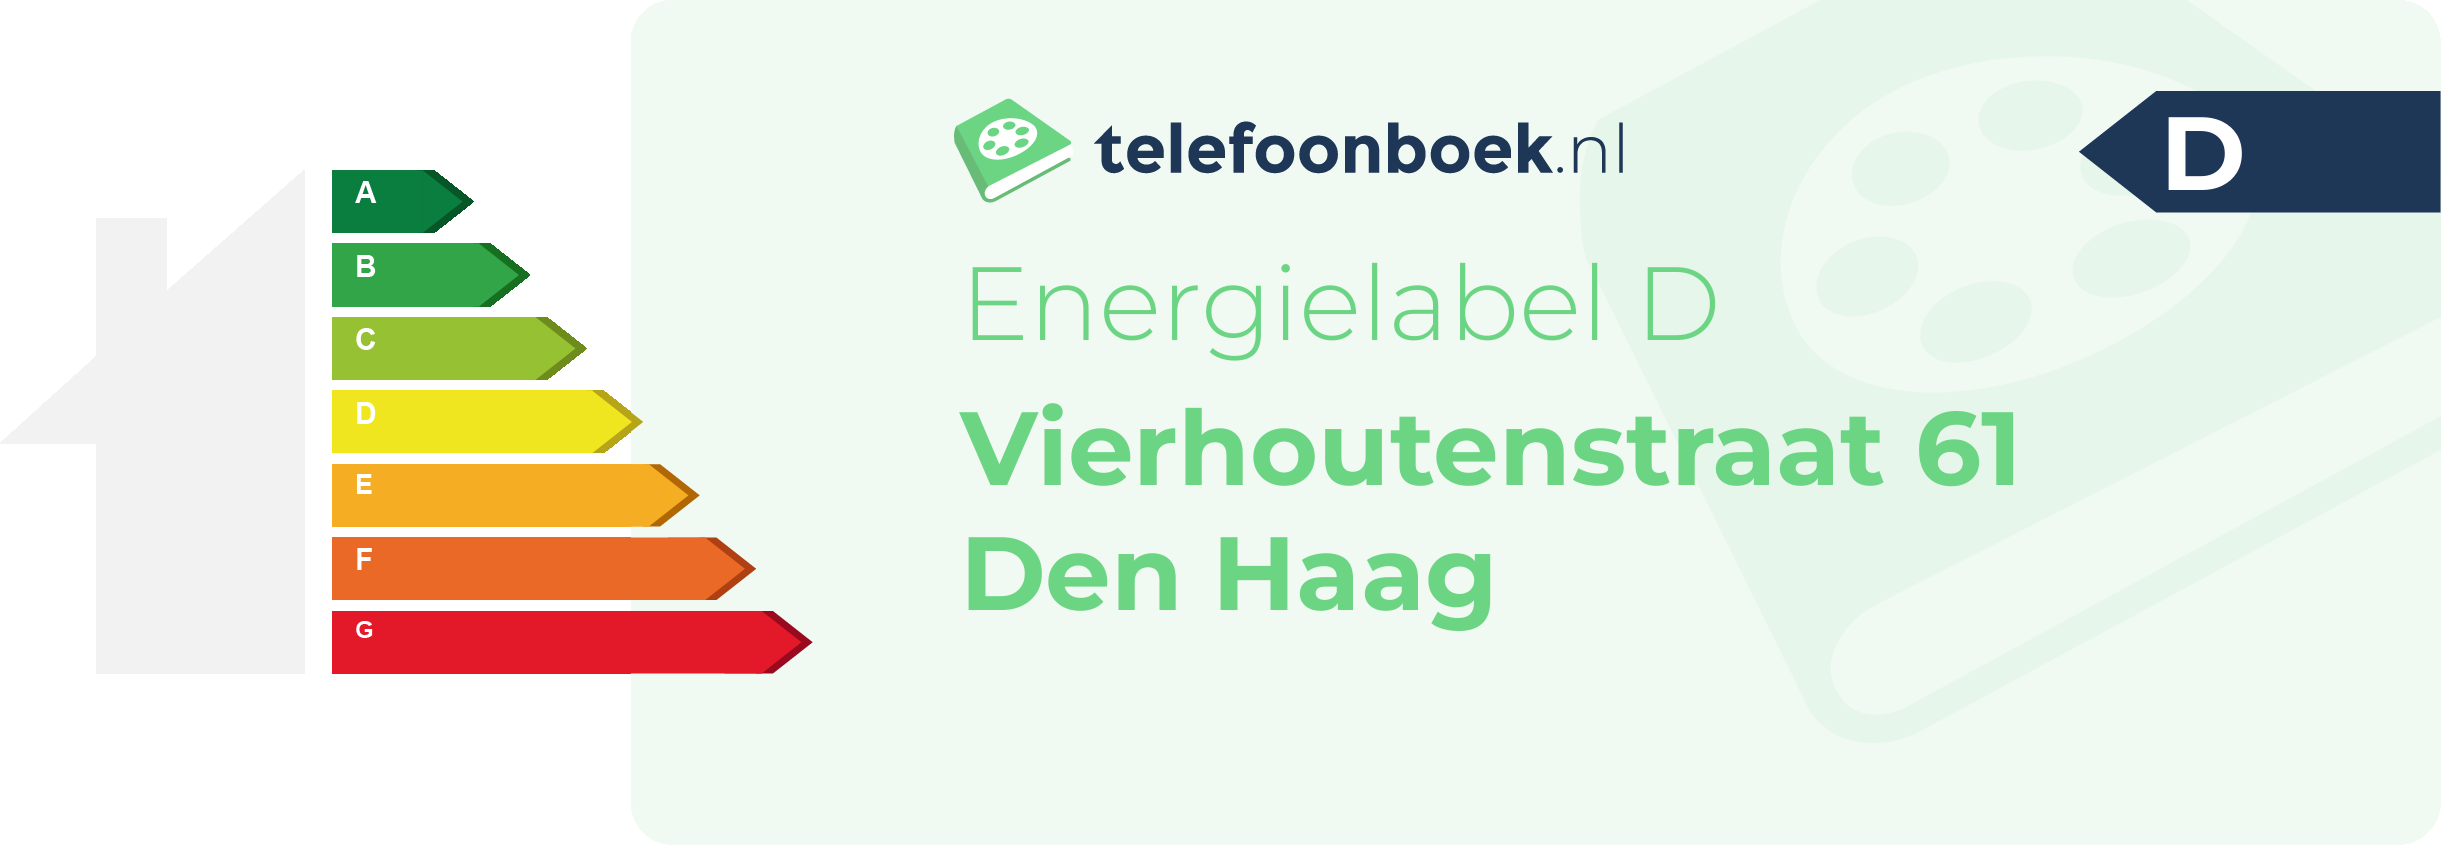 Energielabel Vierhoutenstraat 61 Den Haag